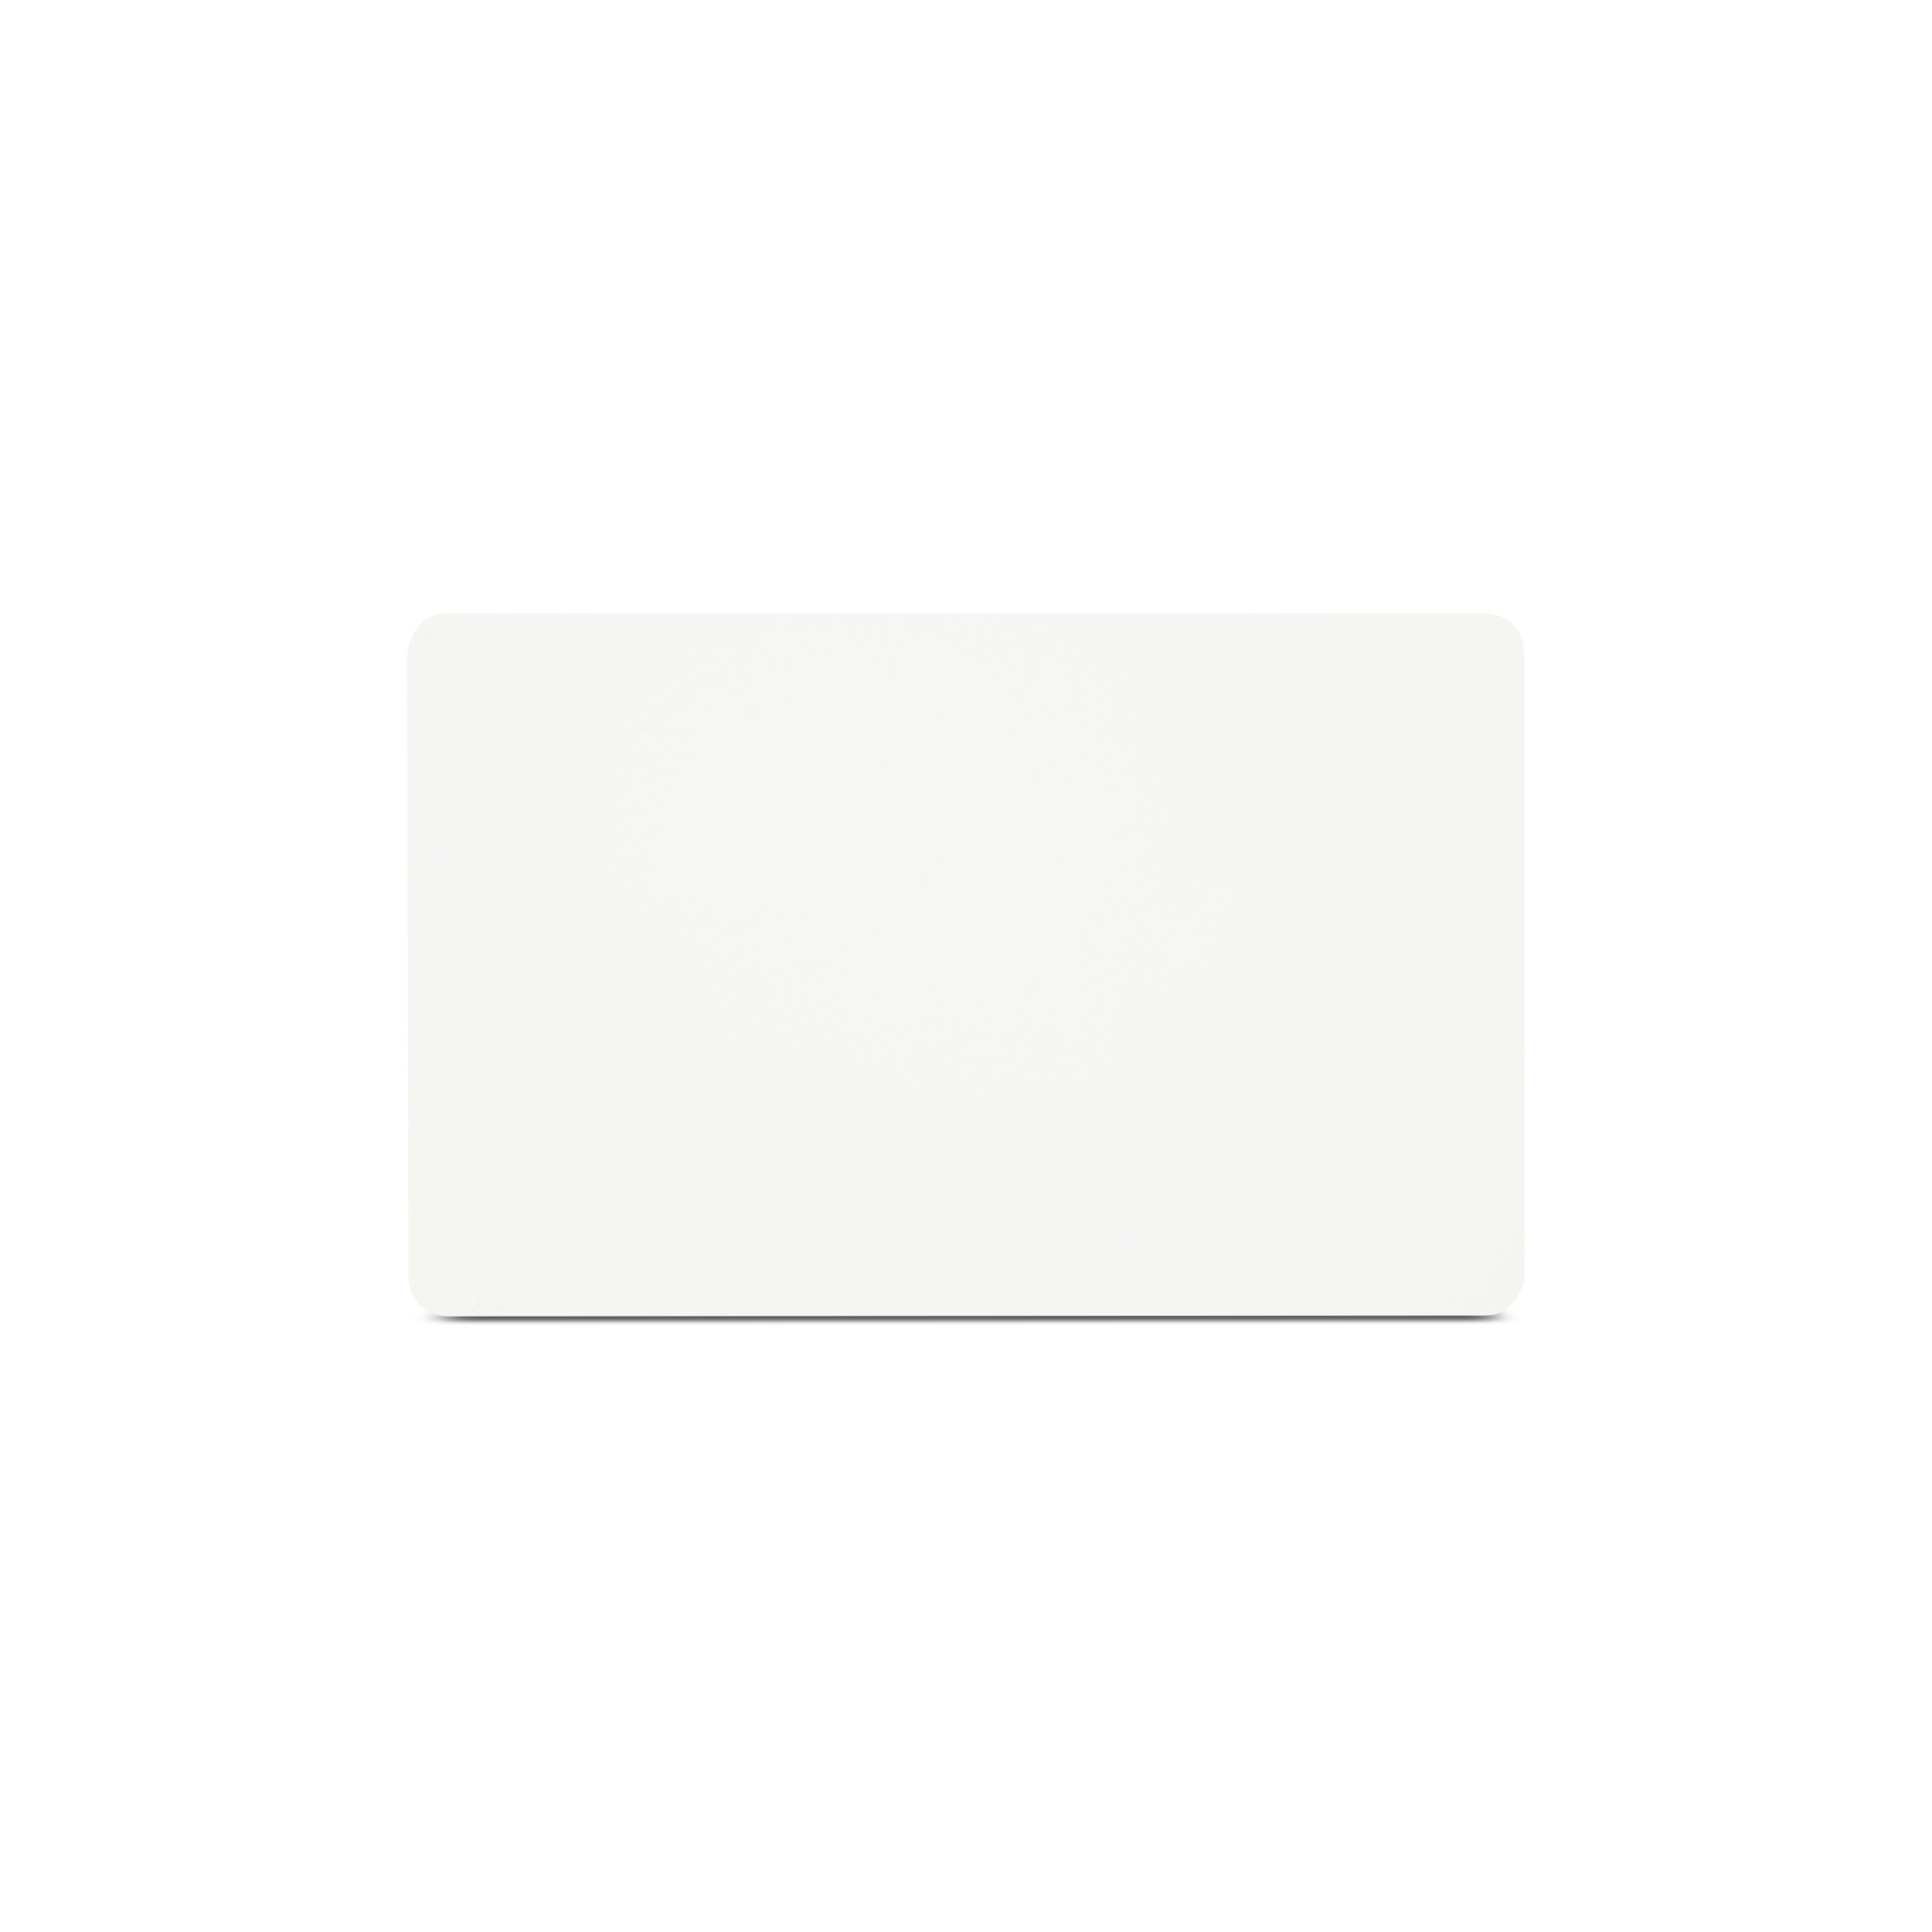 Horizontal stehende NFC Karte aus PVC in weiß